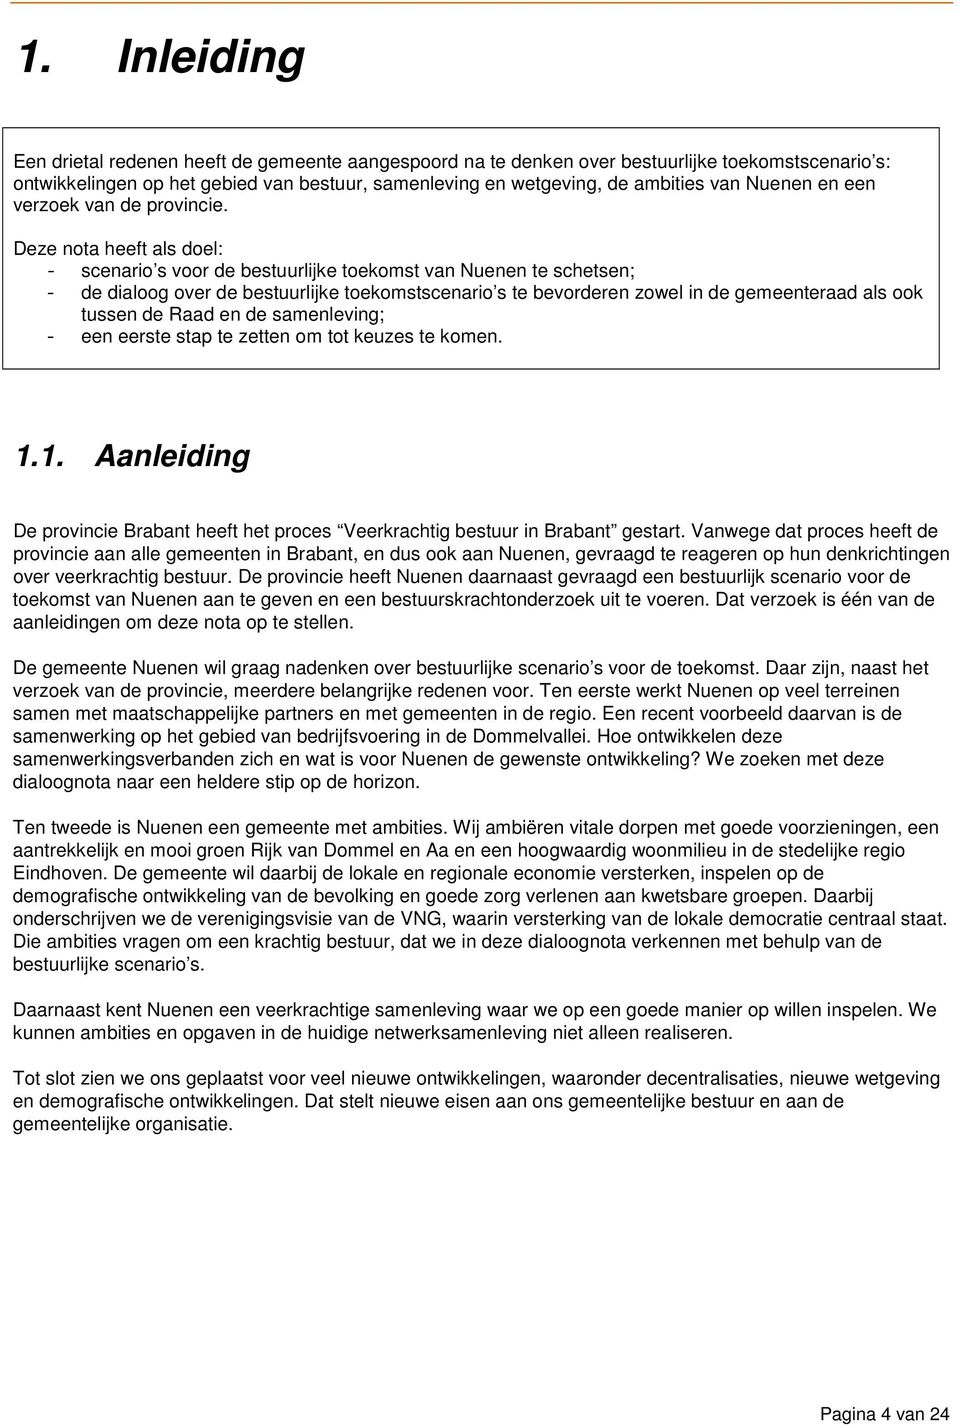 Deze nota heeft als doel: - scenario s voor de bestuurlijke toekomst van Nuenen te schetsen; - de dialoog over de bestuurlijke toekomstscenario s te bevorderen zowel in de gemeenteraad als ook tussen